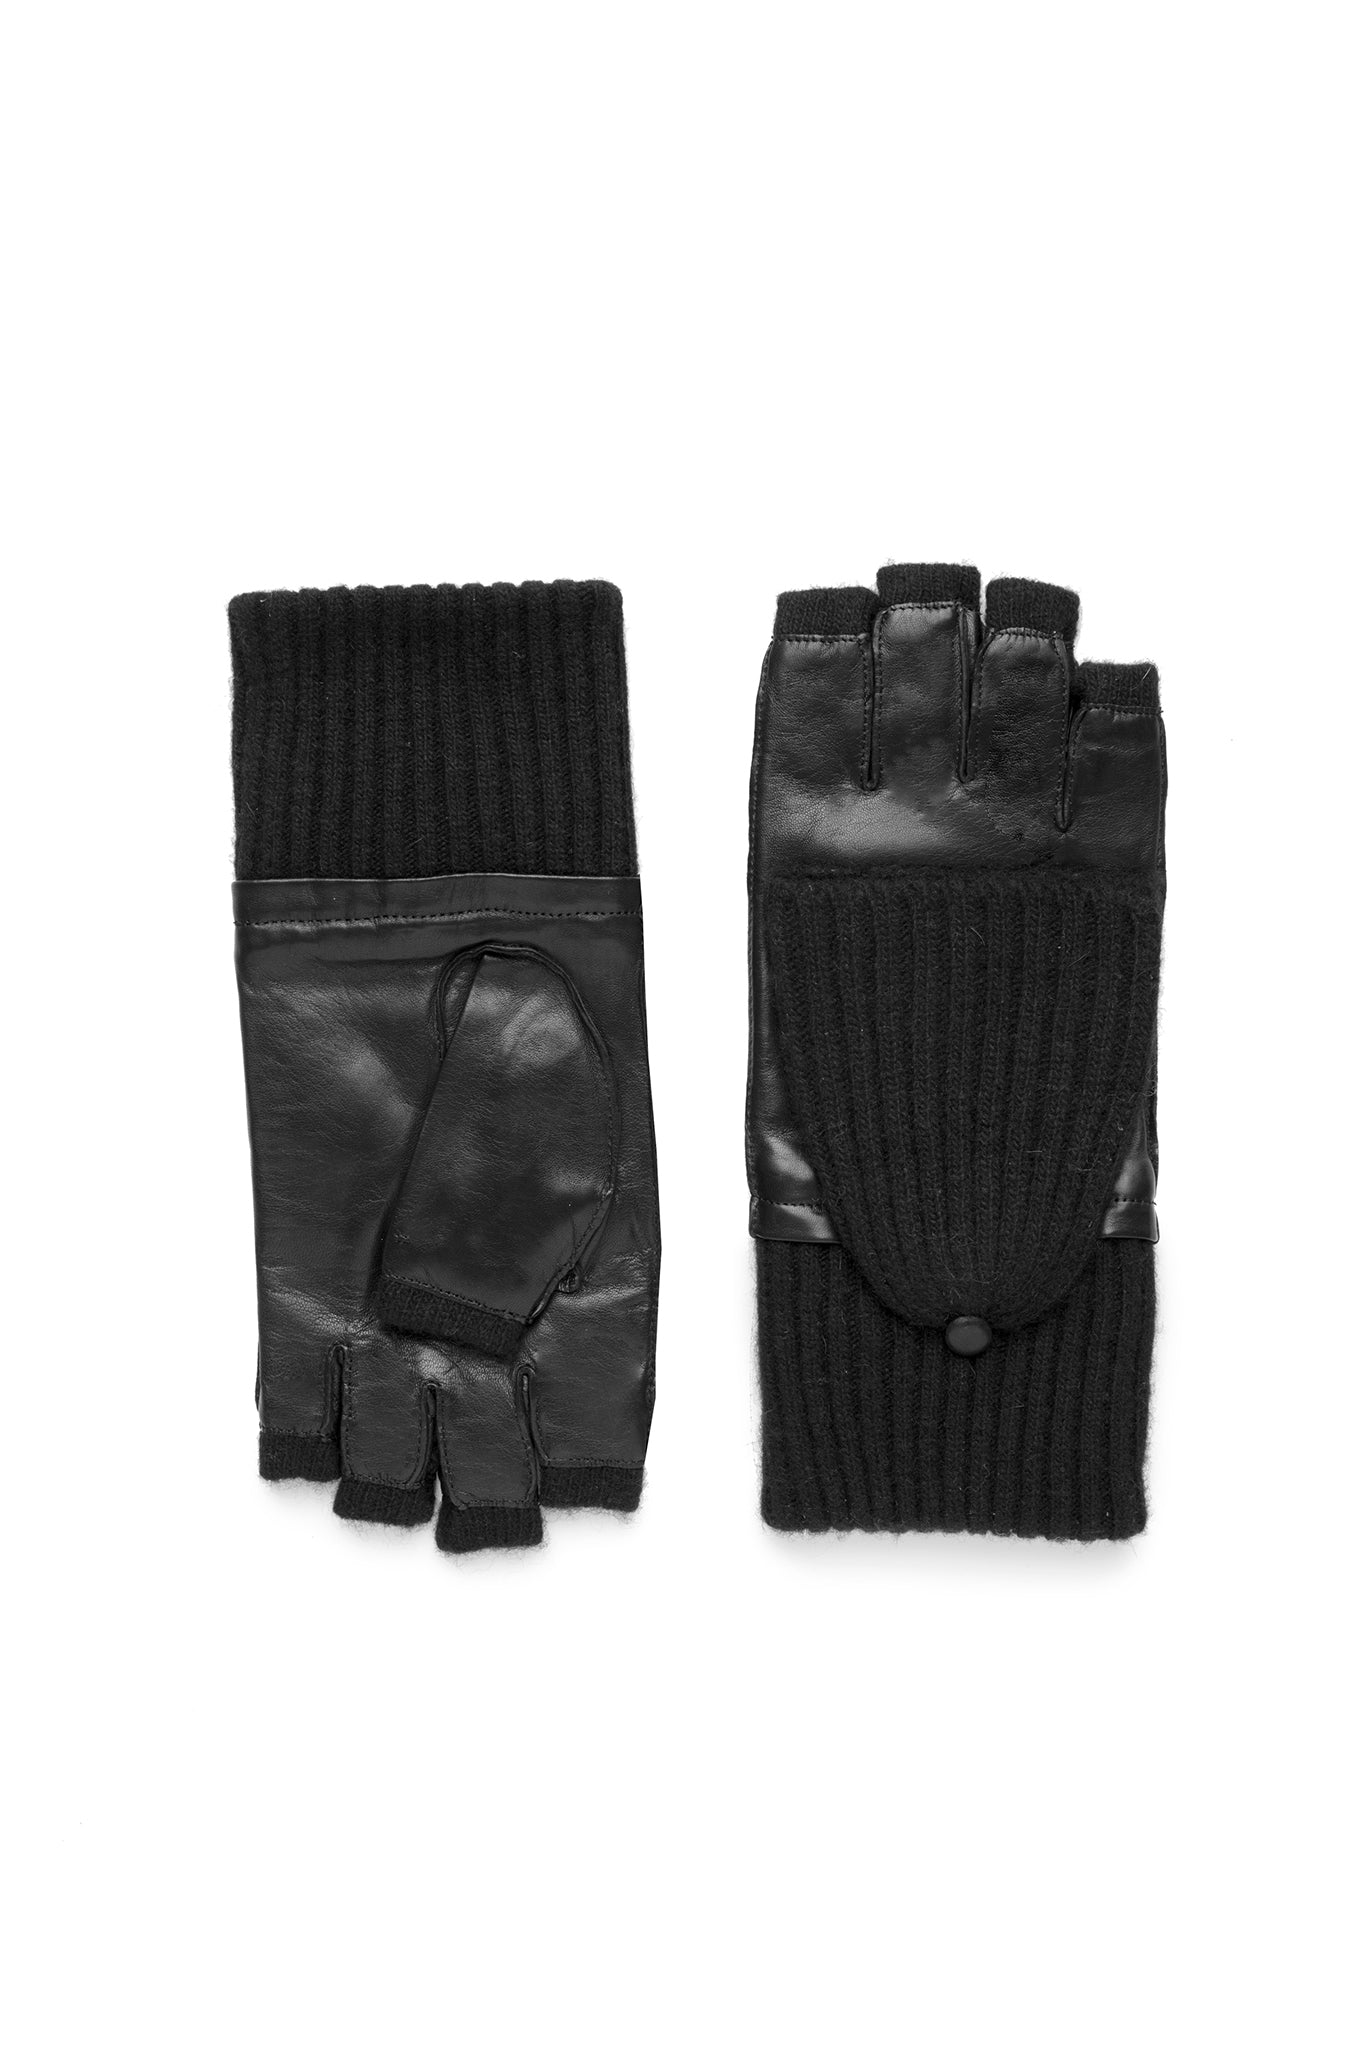 Amato Lambskin Poptop Glove - Black